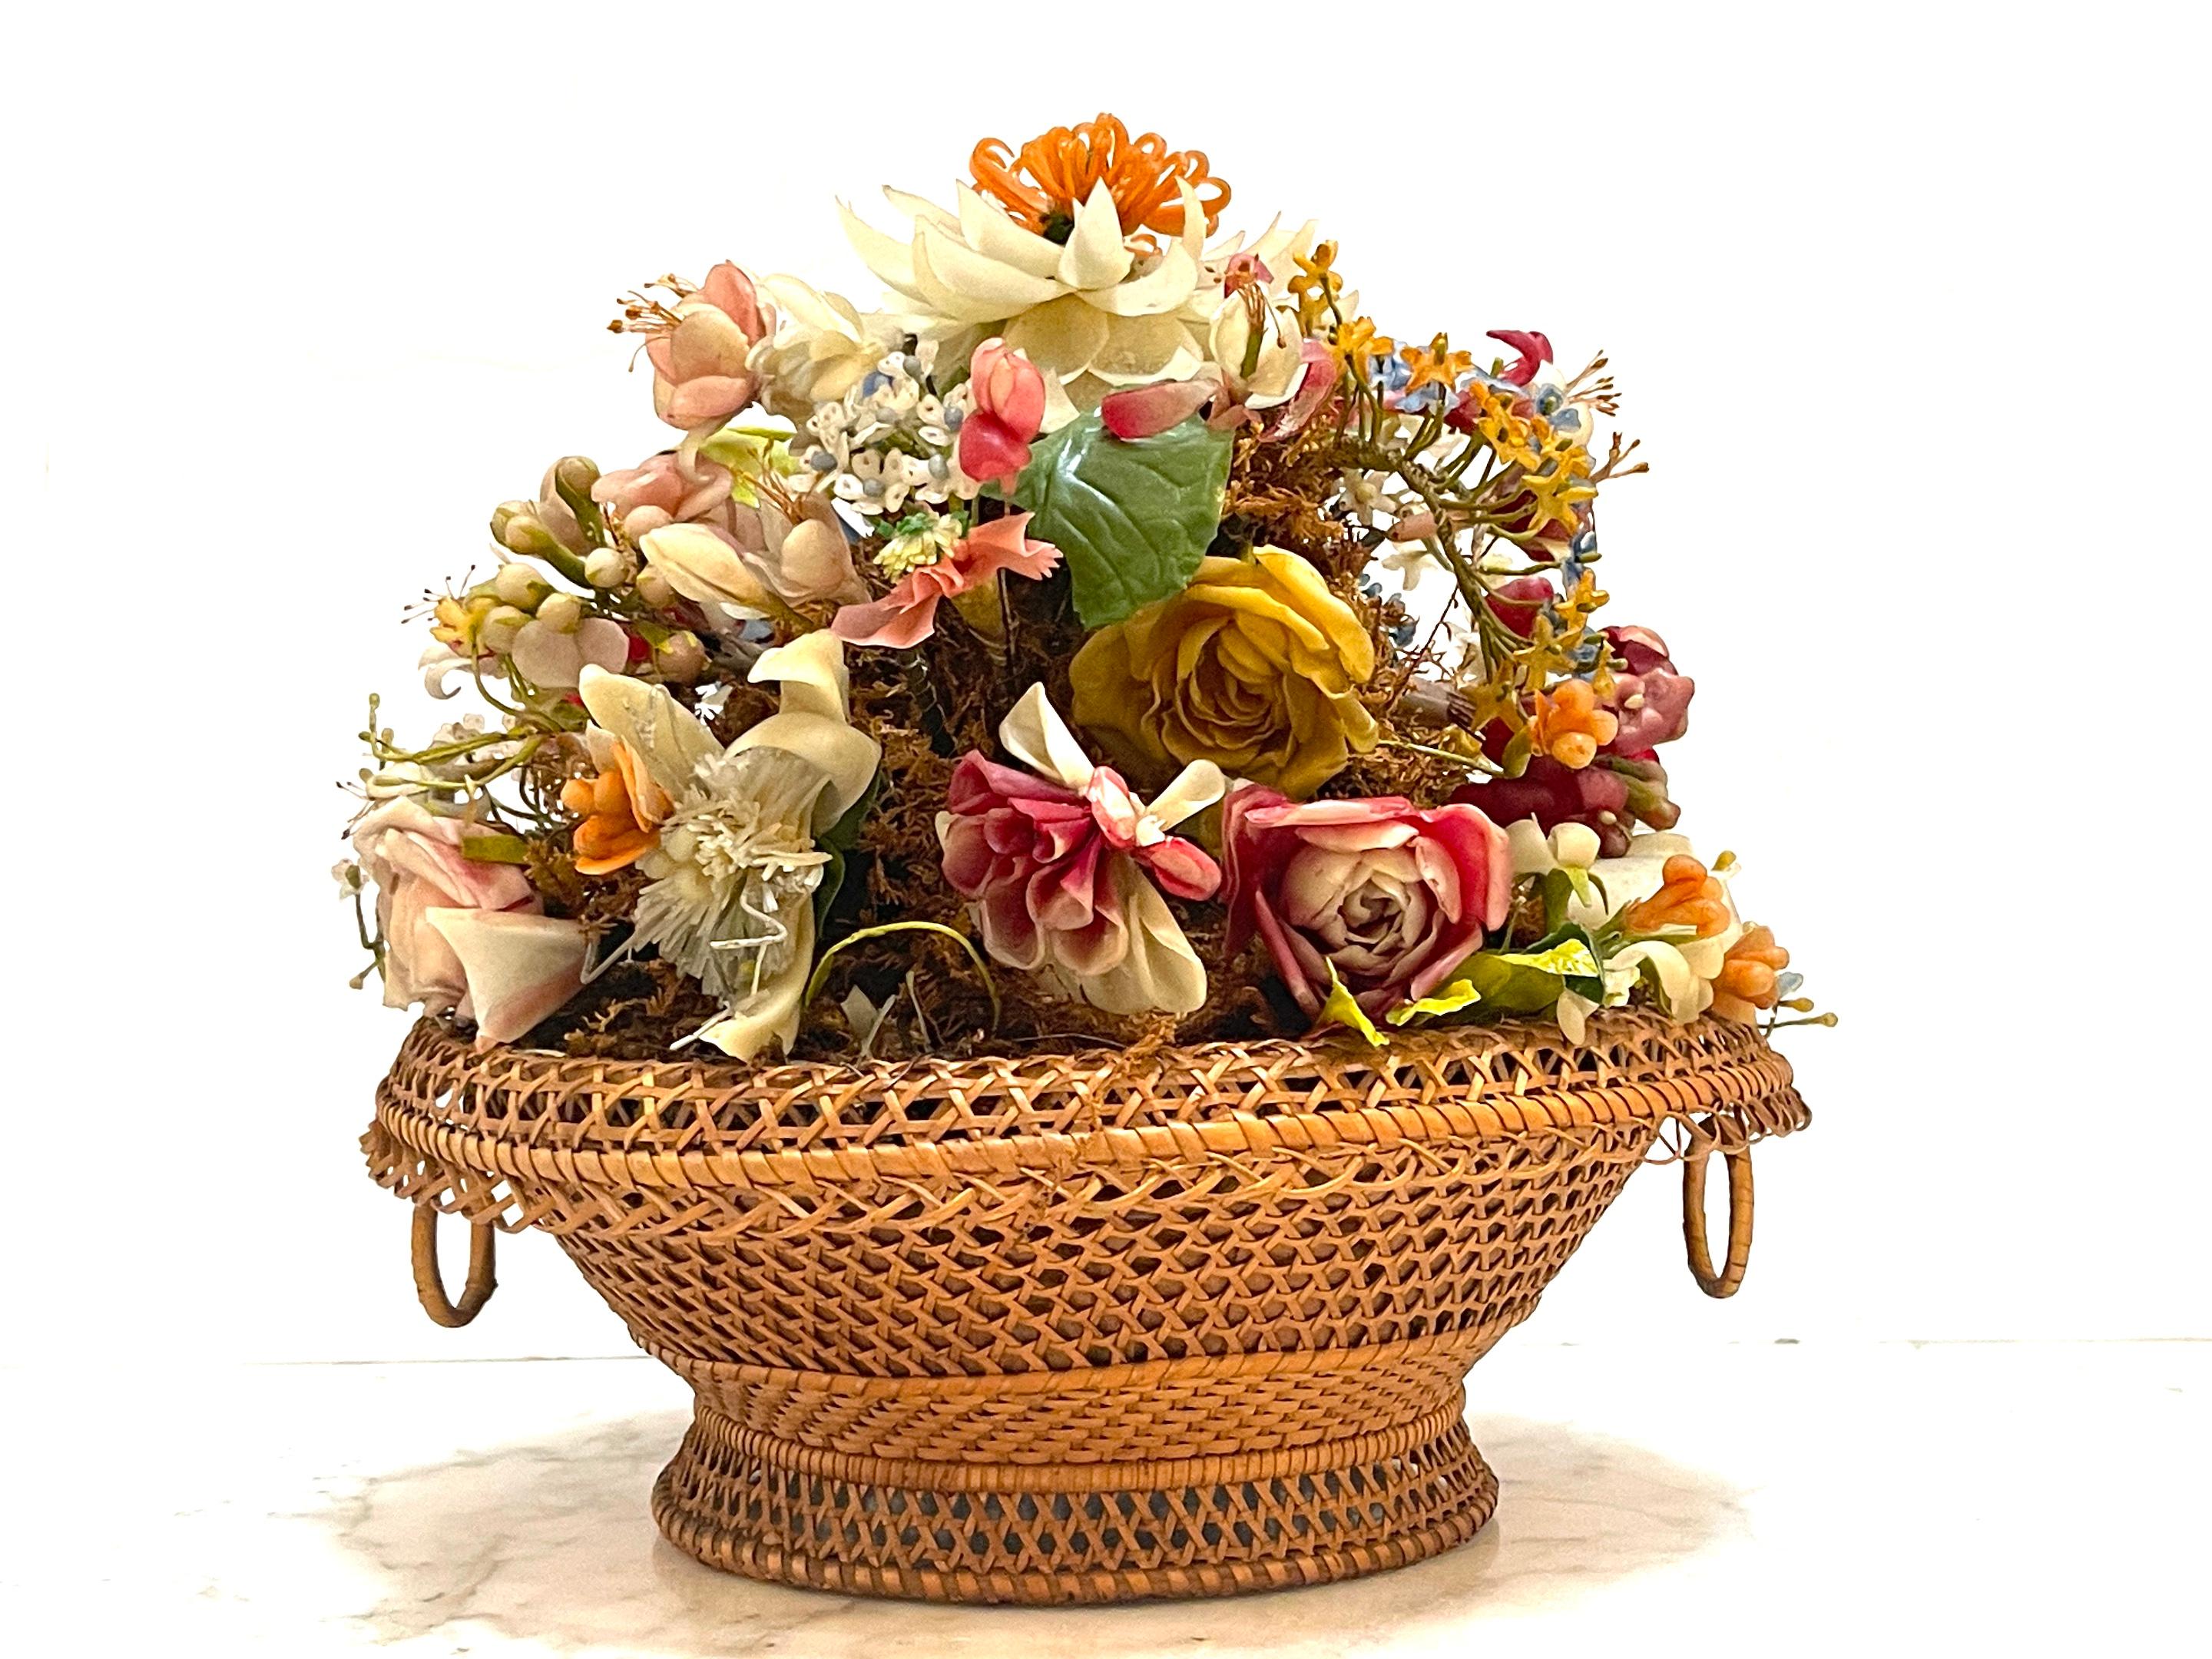 Victorian Wax Flower Still Life Basket Under Round Glass Dome For Sale 8